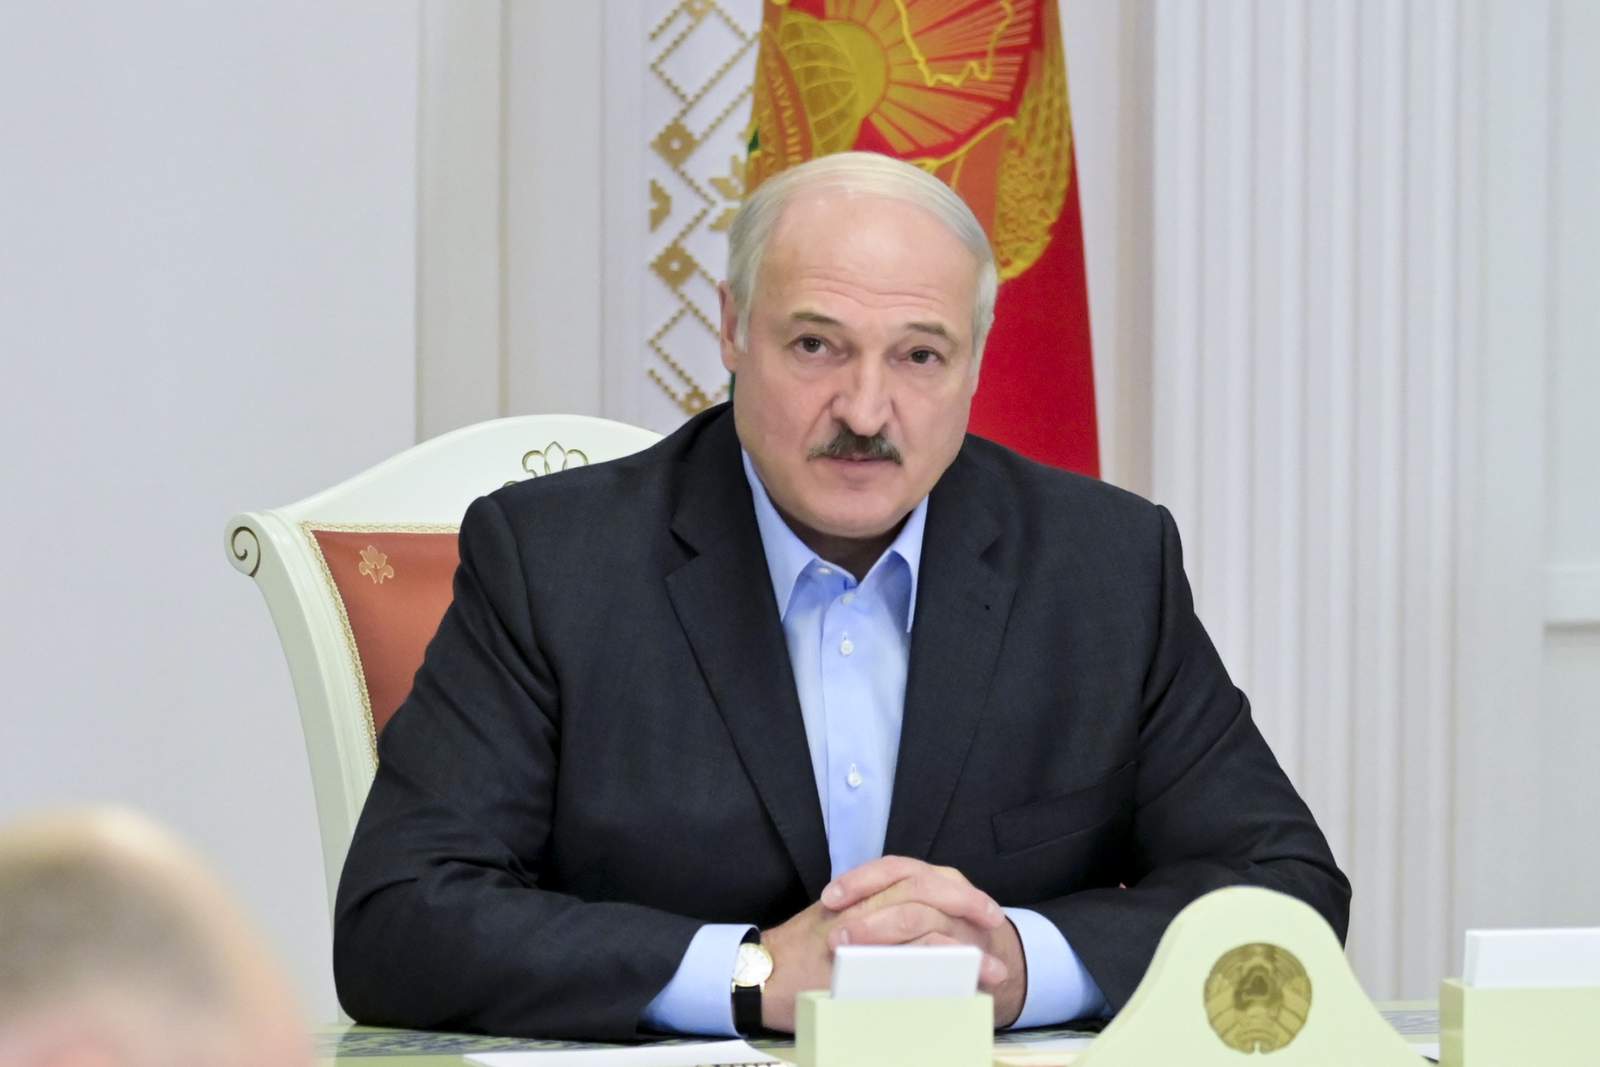 Líder de Bielorrusia, Alexander Lukashenko, visita Rusia para obtener apoyo en medio de protestas